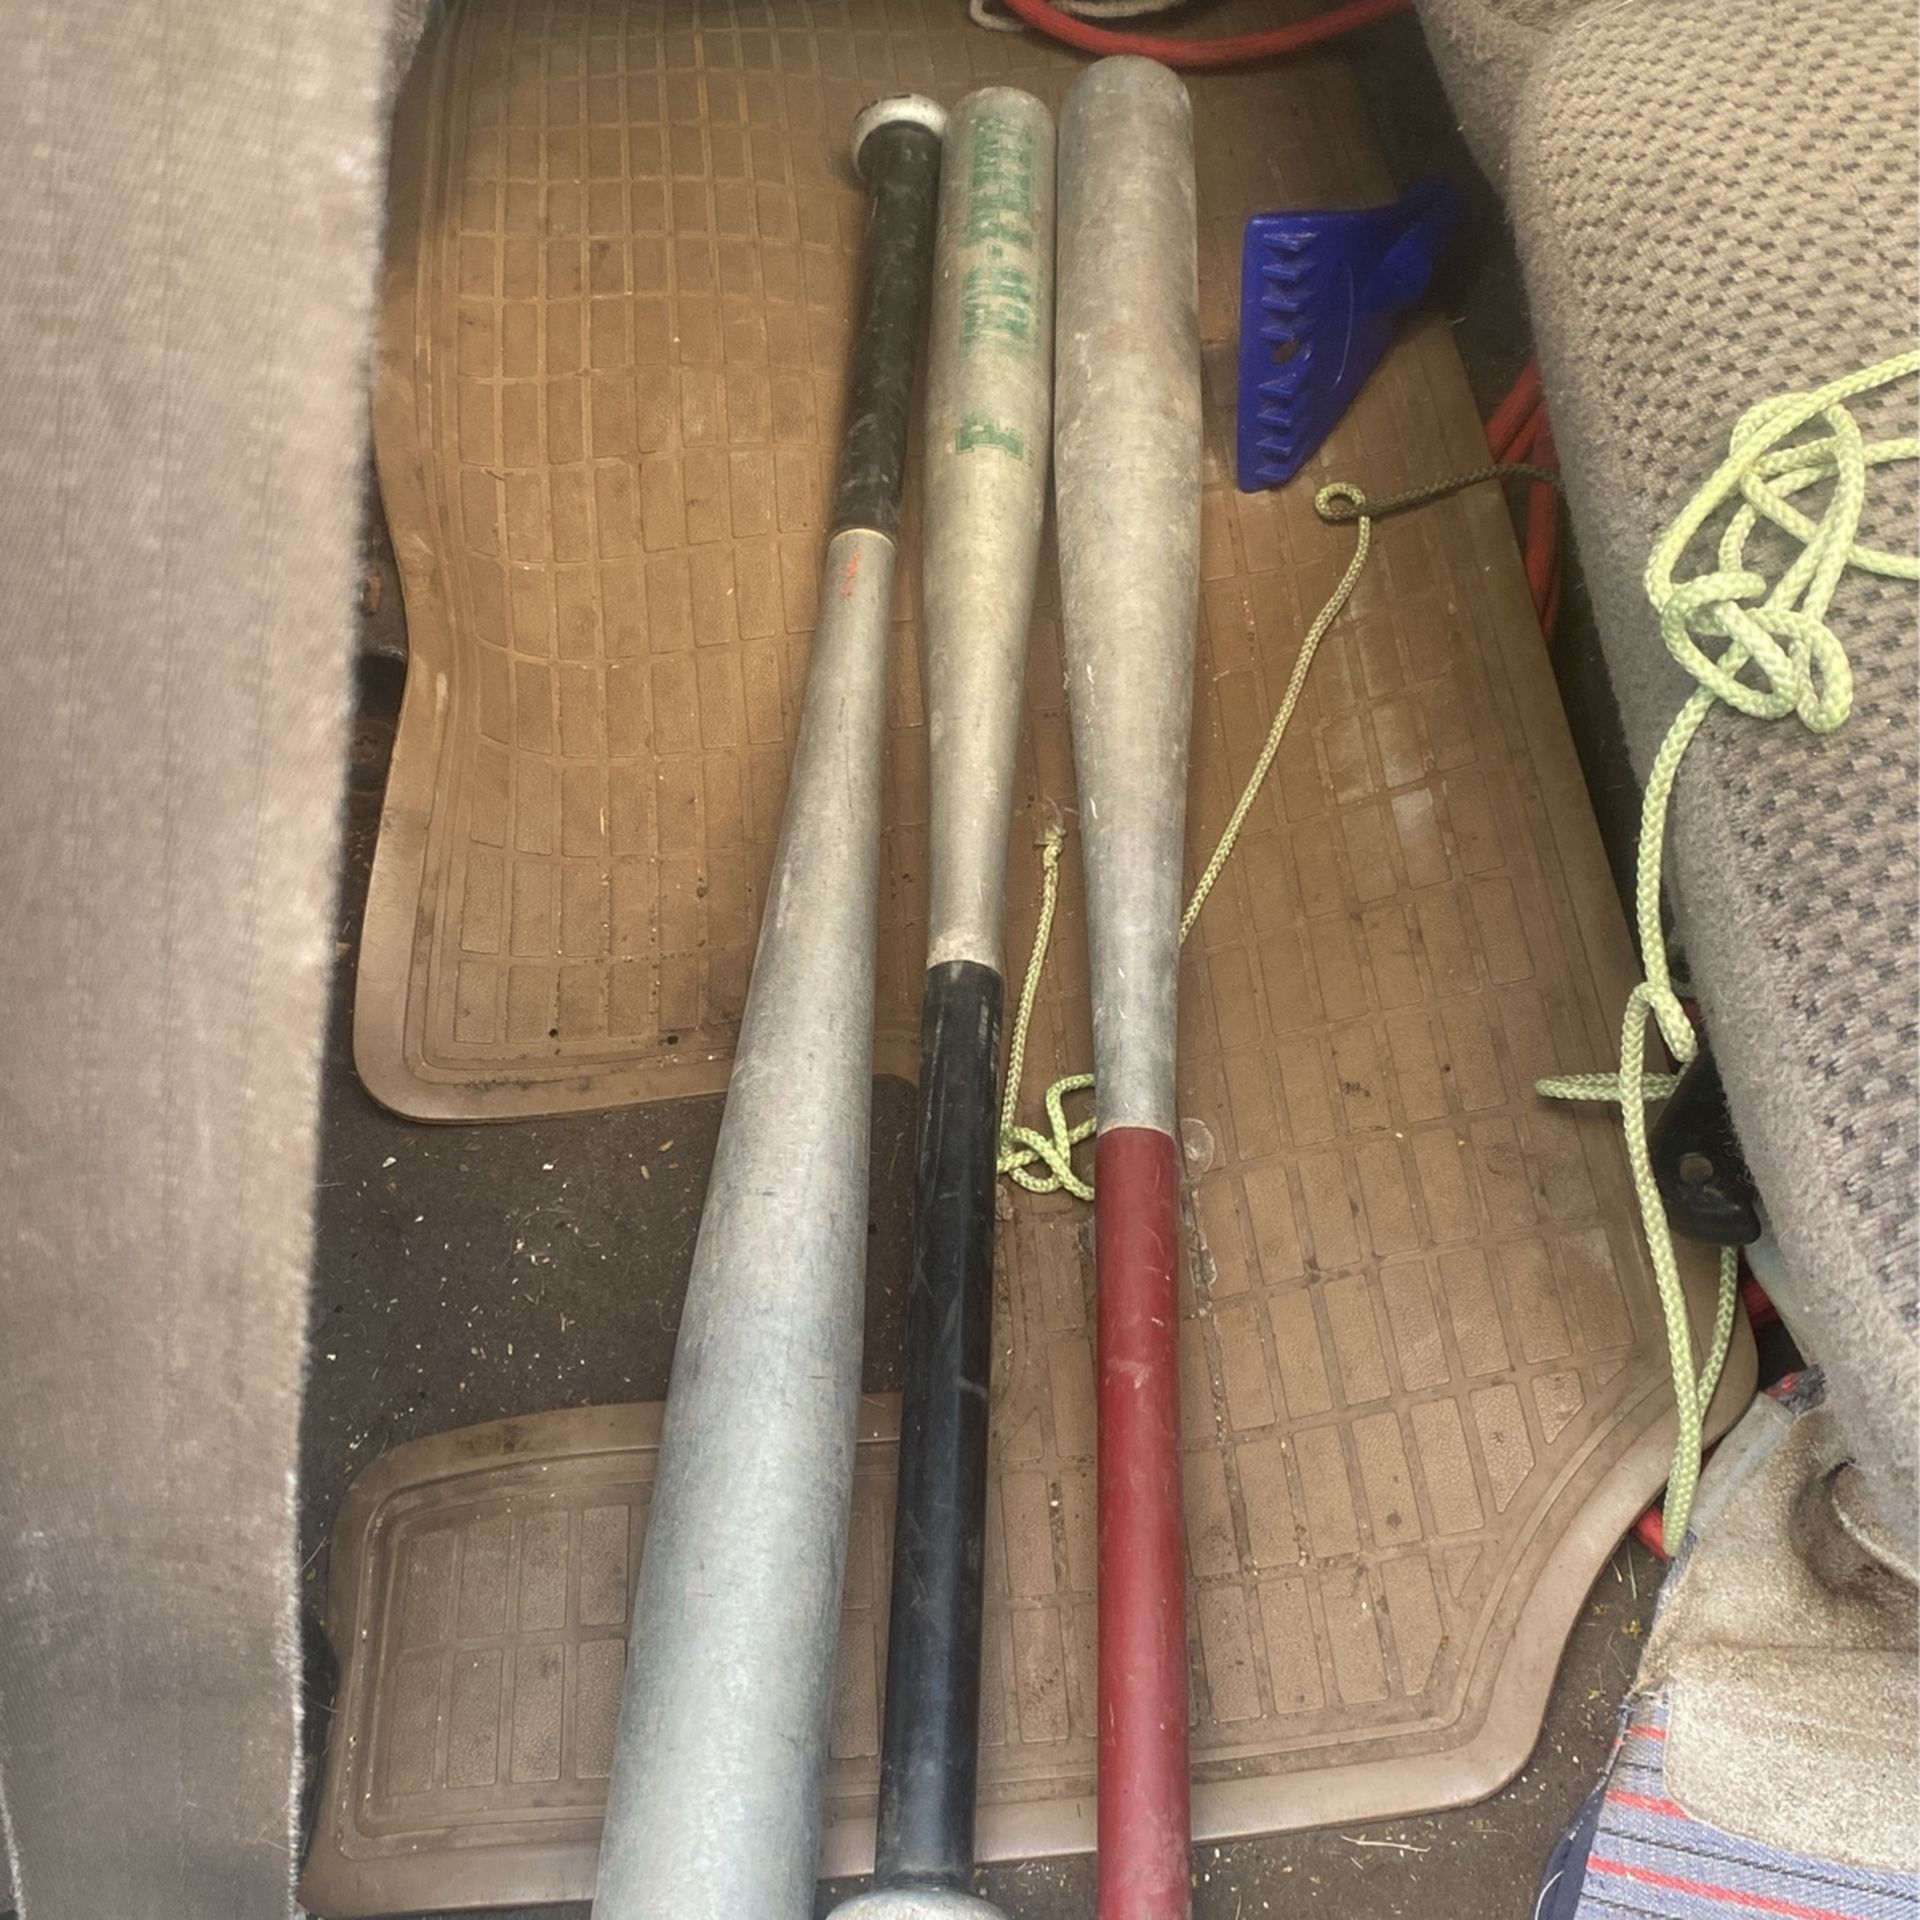 Three aluminum Baseball bats